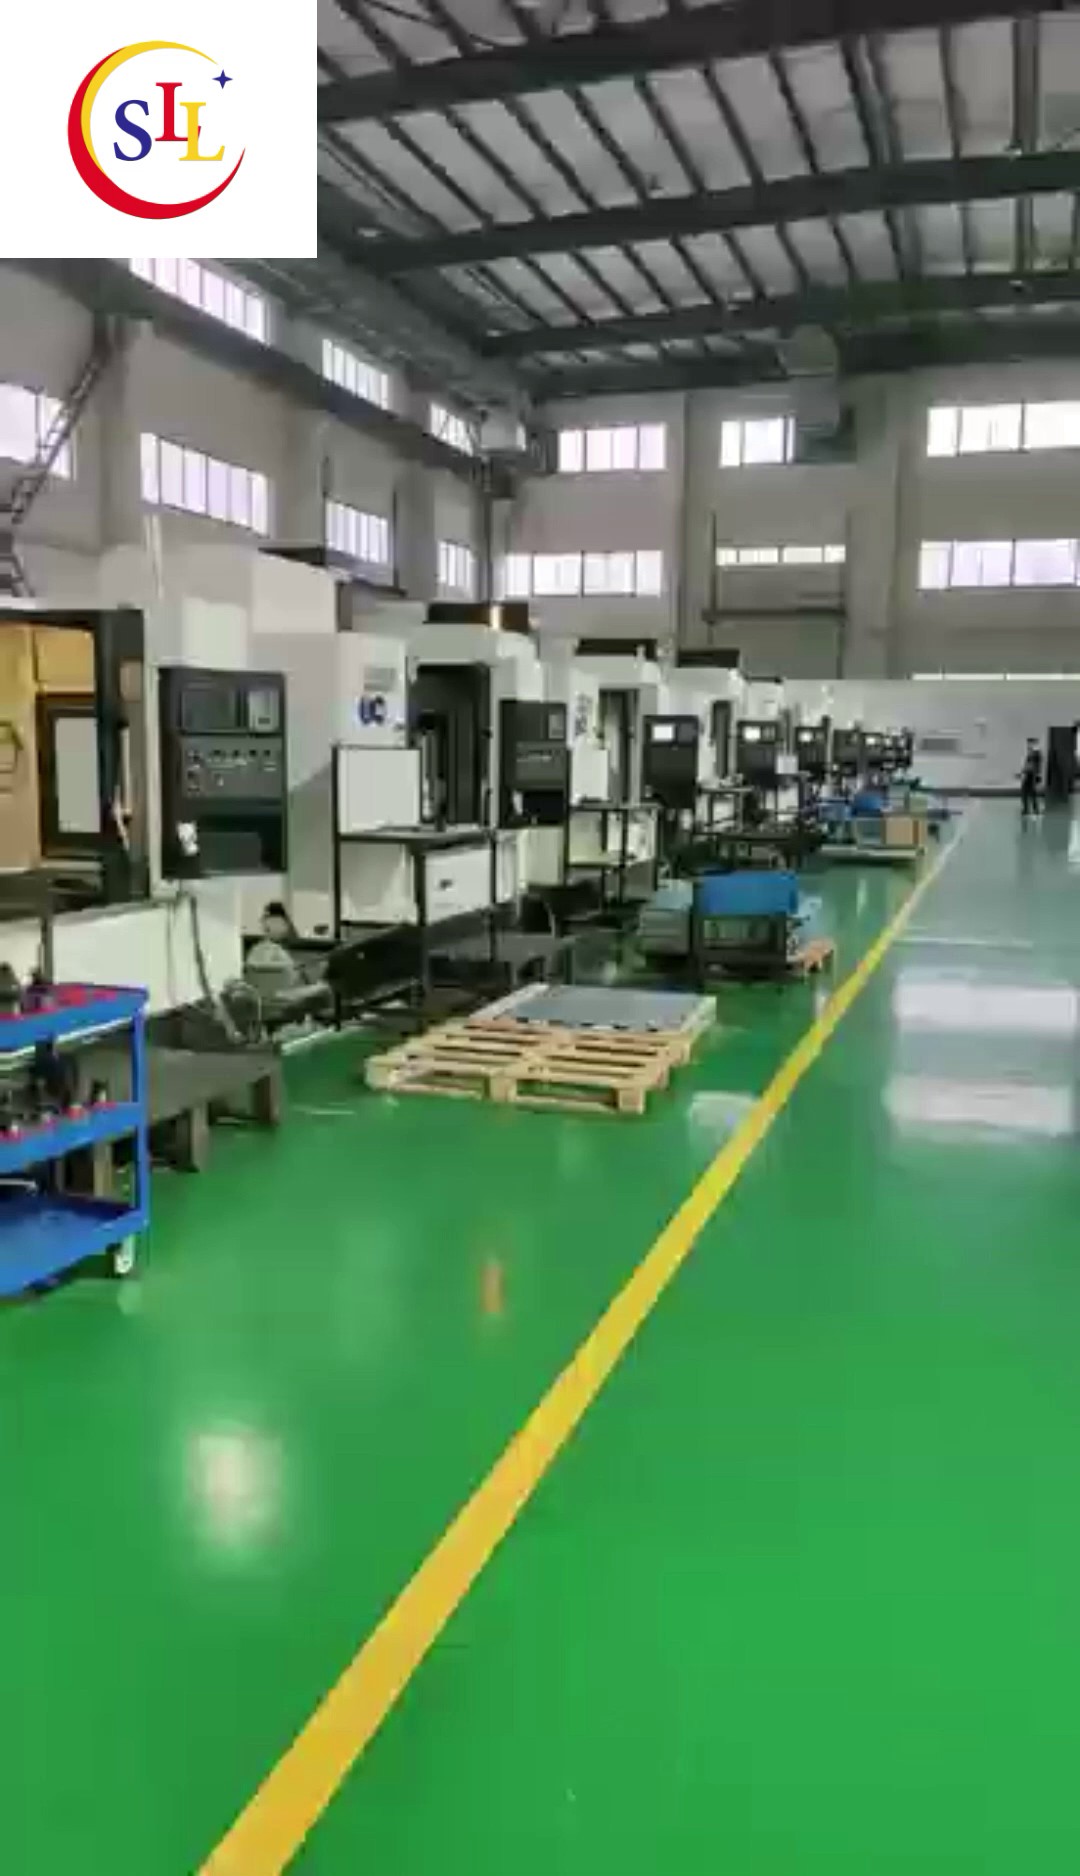 广州新能源汽车石墨治具厂家供应,石墨治具